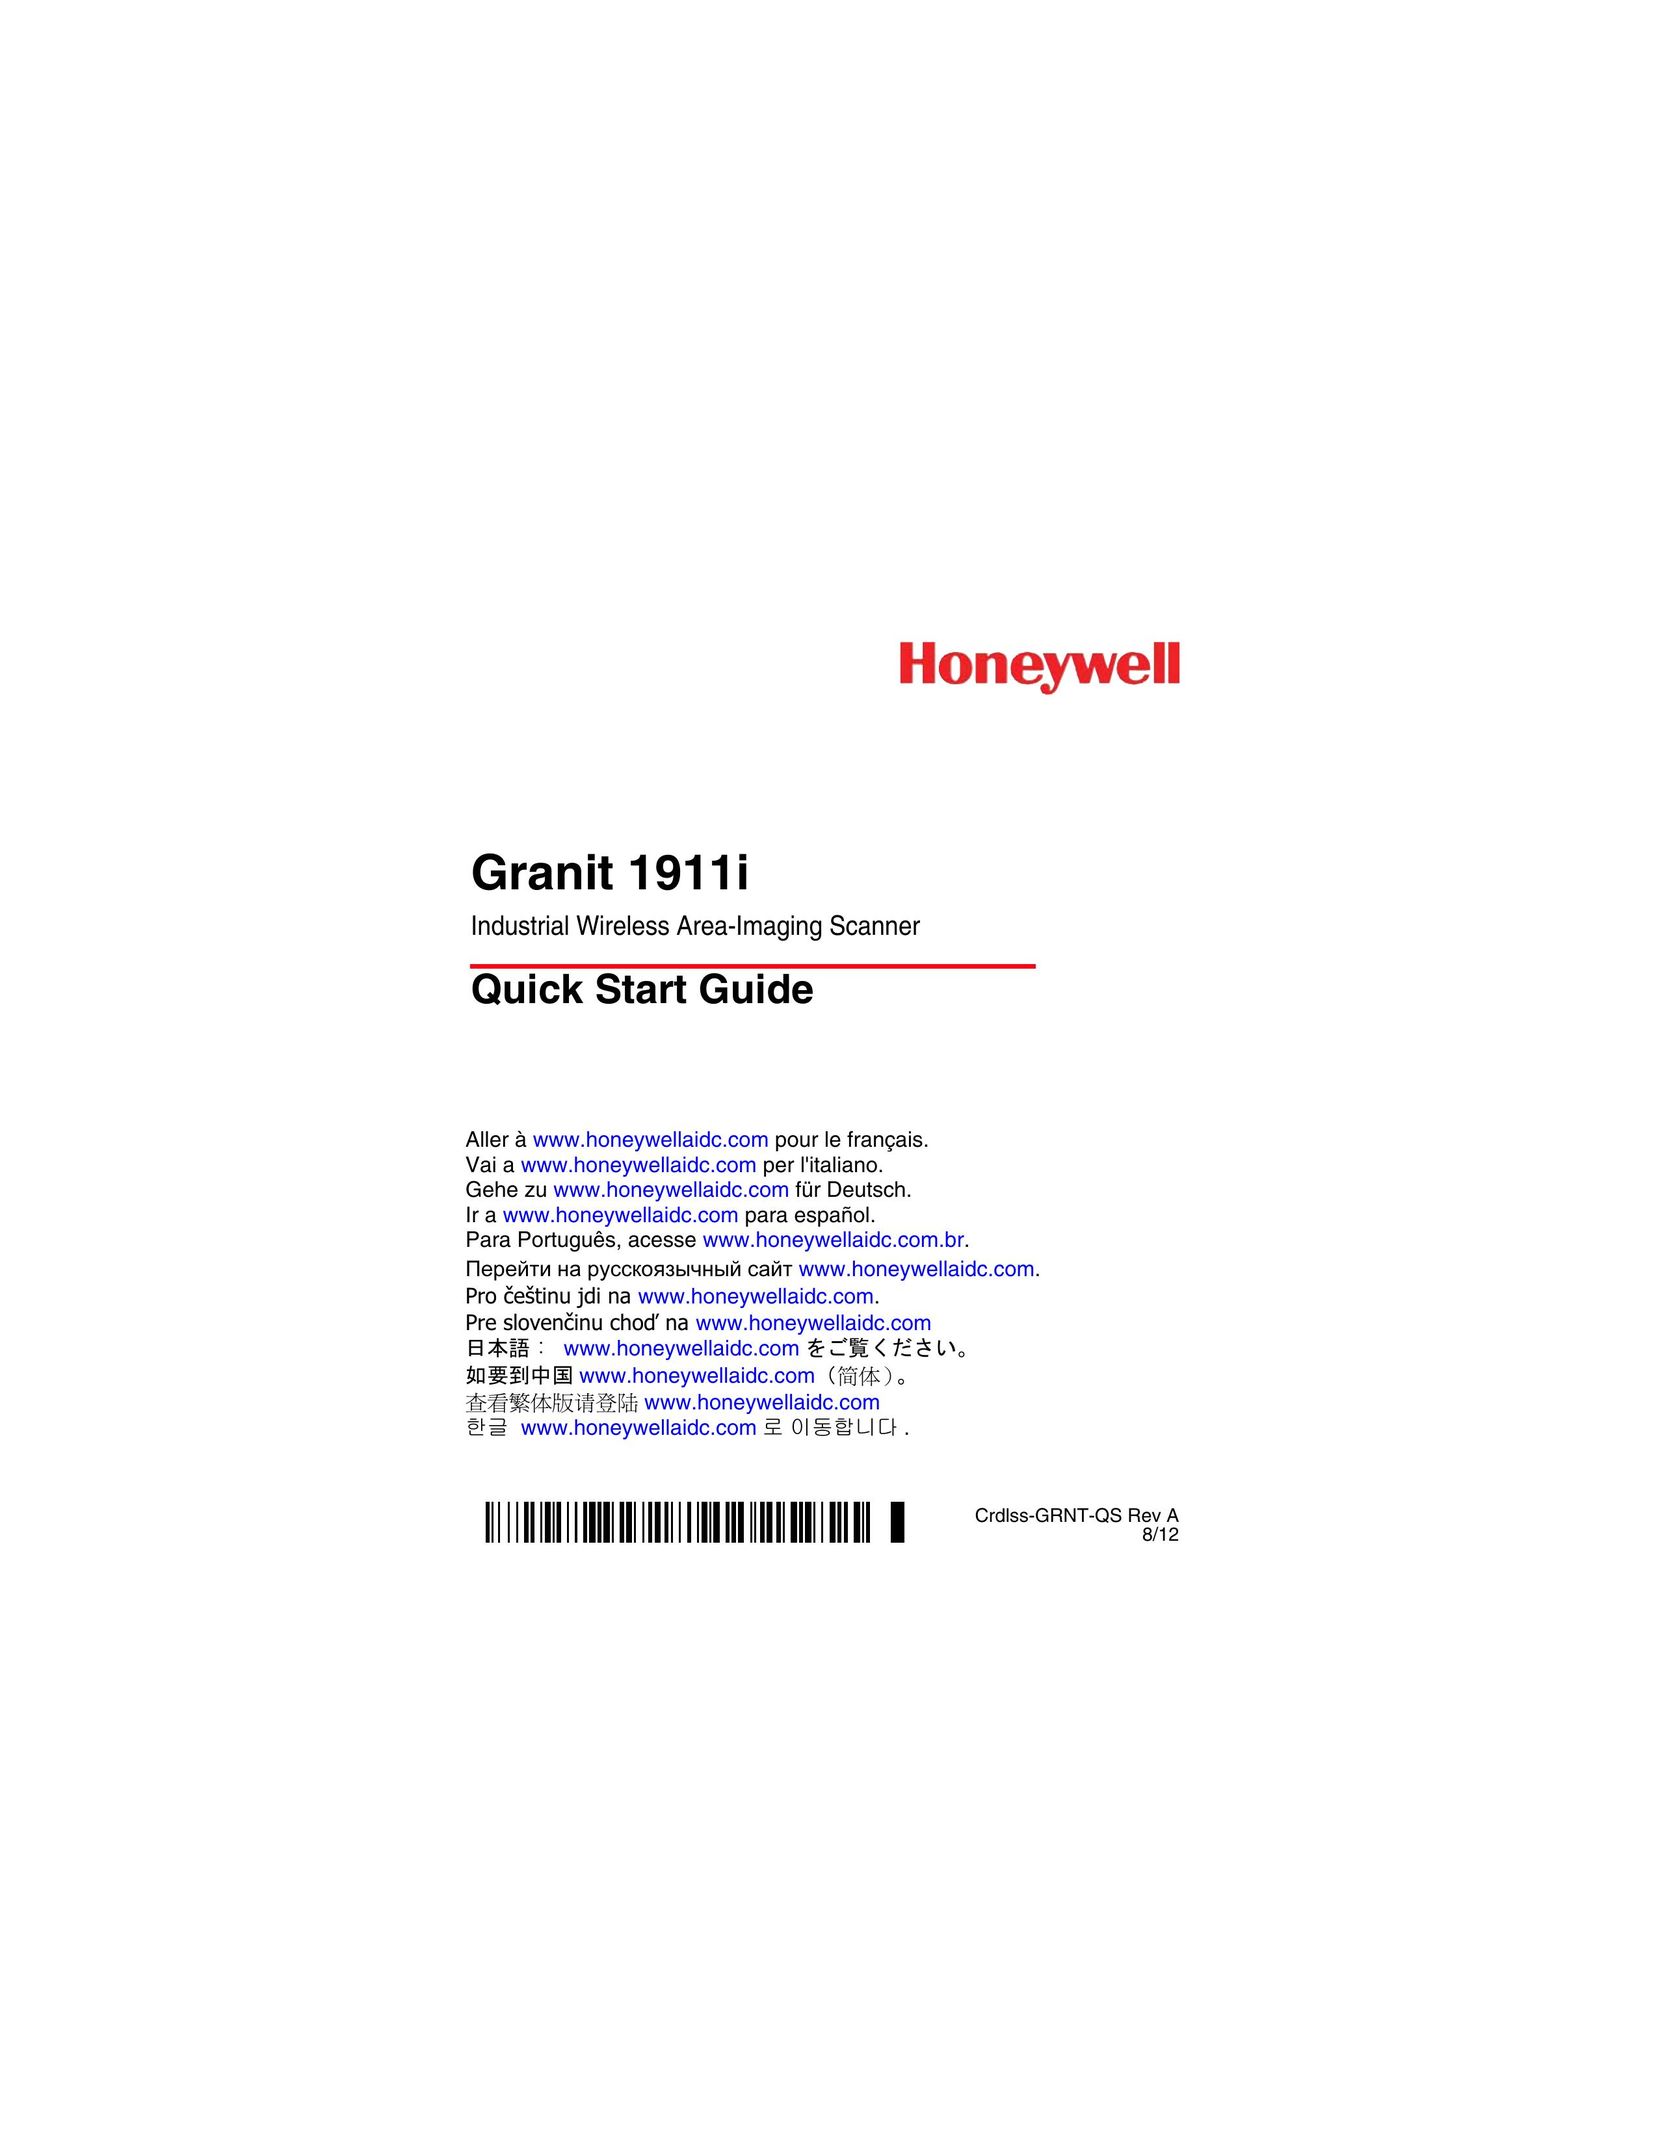 Honeywell 1911i Scanner User Manual